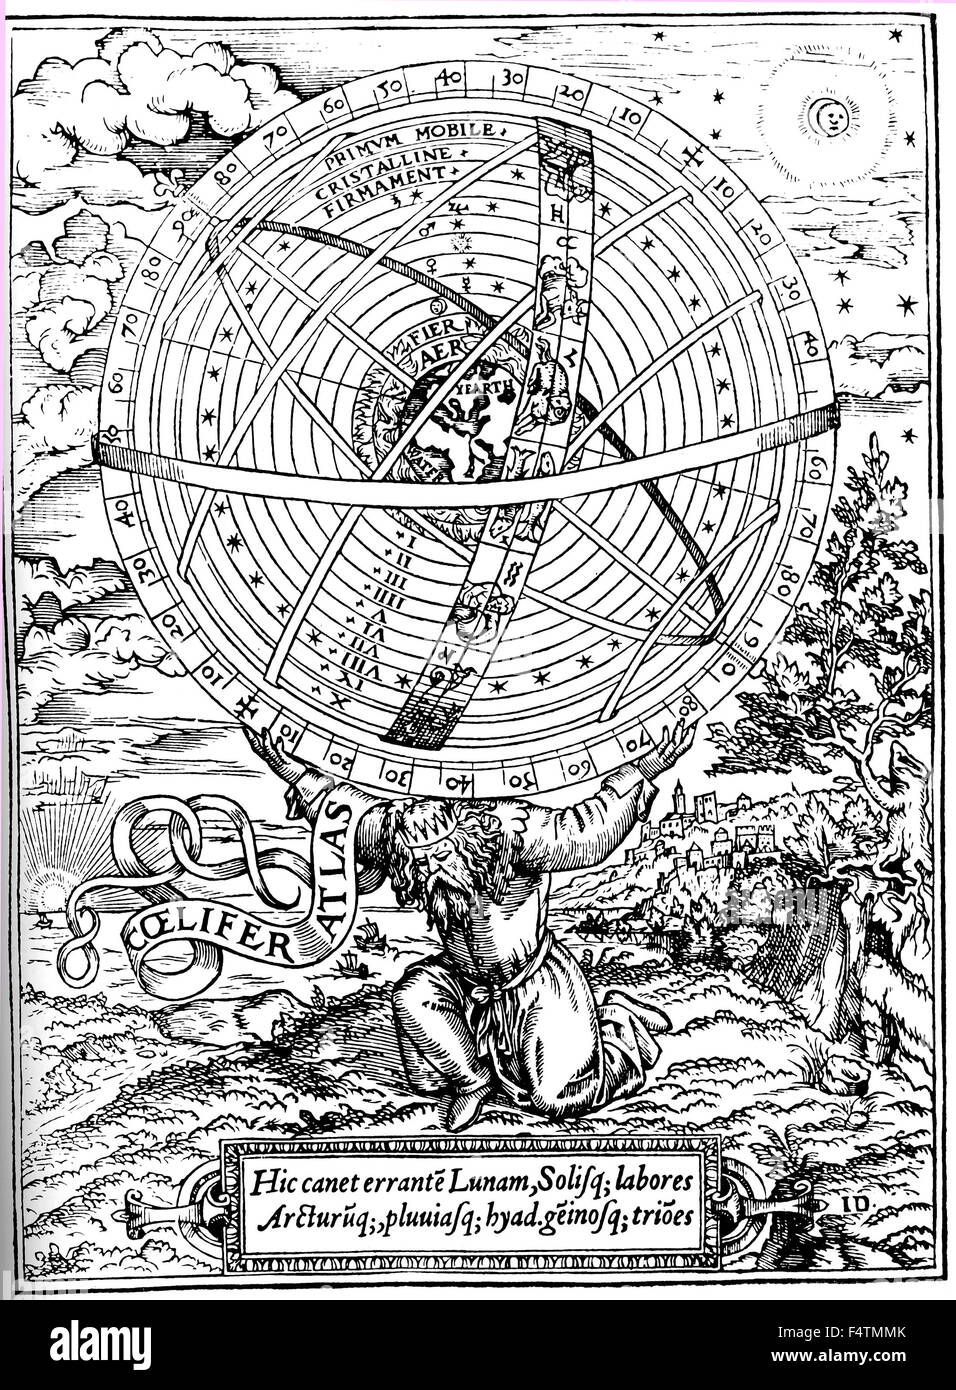 Univers PTOLÉMAÏQUE Woodcut de William Cunningham's 'Glasse cosmologique" publié à Londres en 1559 montrant la réalisation de l'Atlas l'univers sur ses épaules avec la Terre au centre Banque D'Images